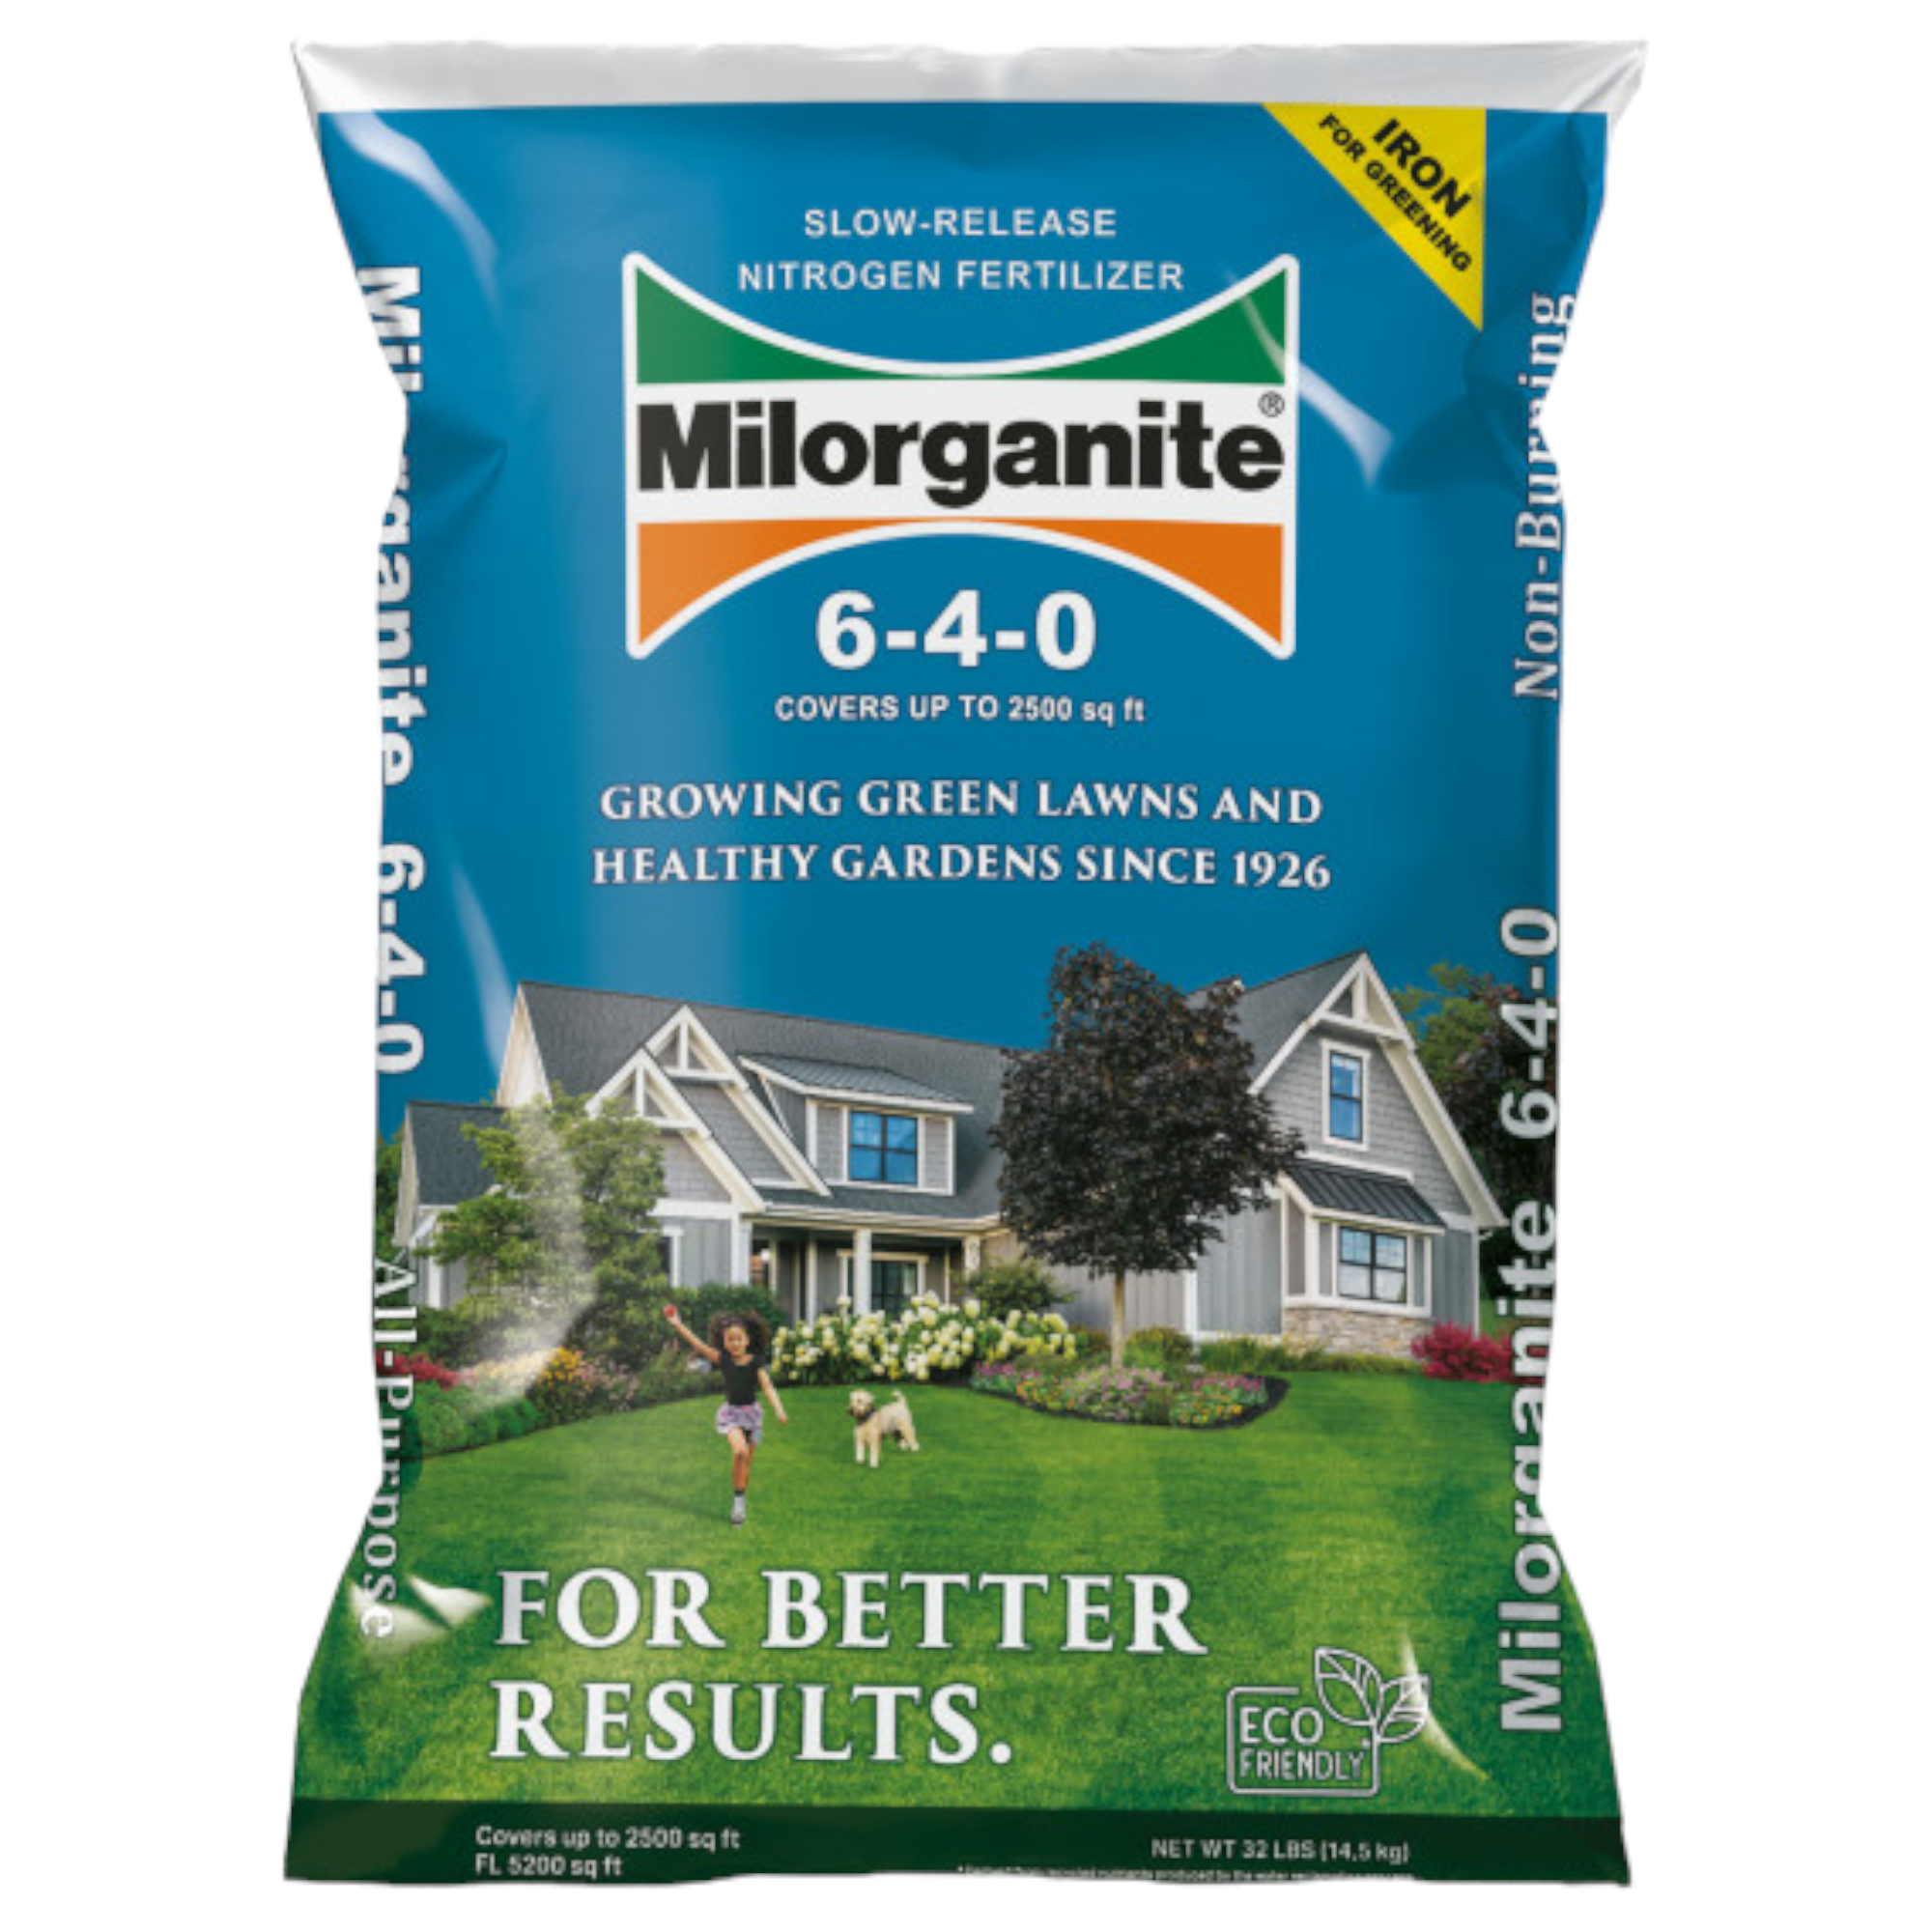 Milorganite Long Lasting All Purpose Lawn Food, 6-4-0 Fertilizer, 32 lb. - image 1 of 5